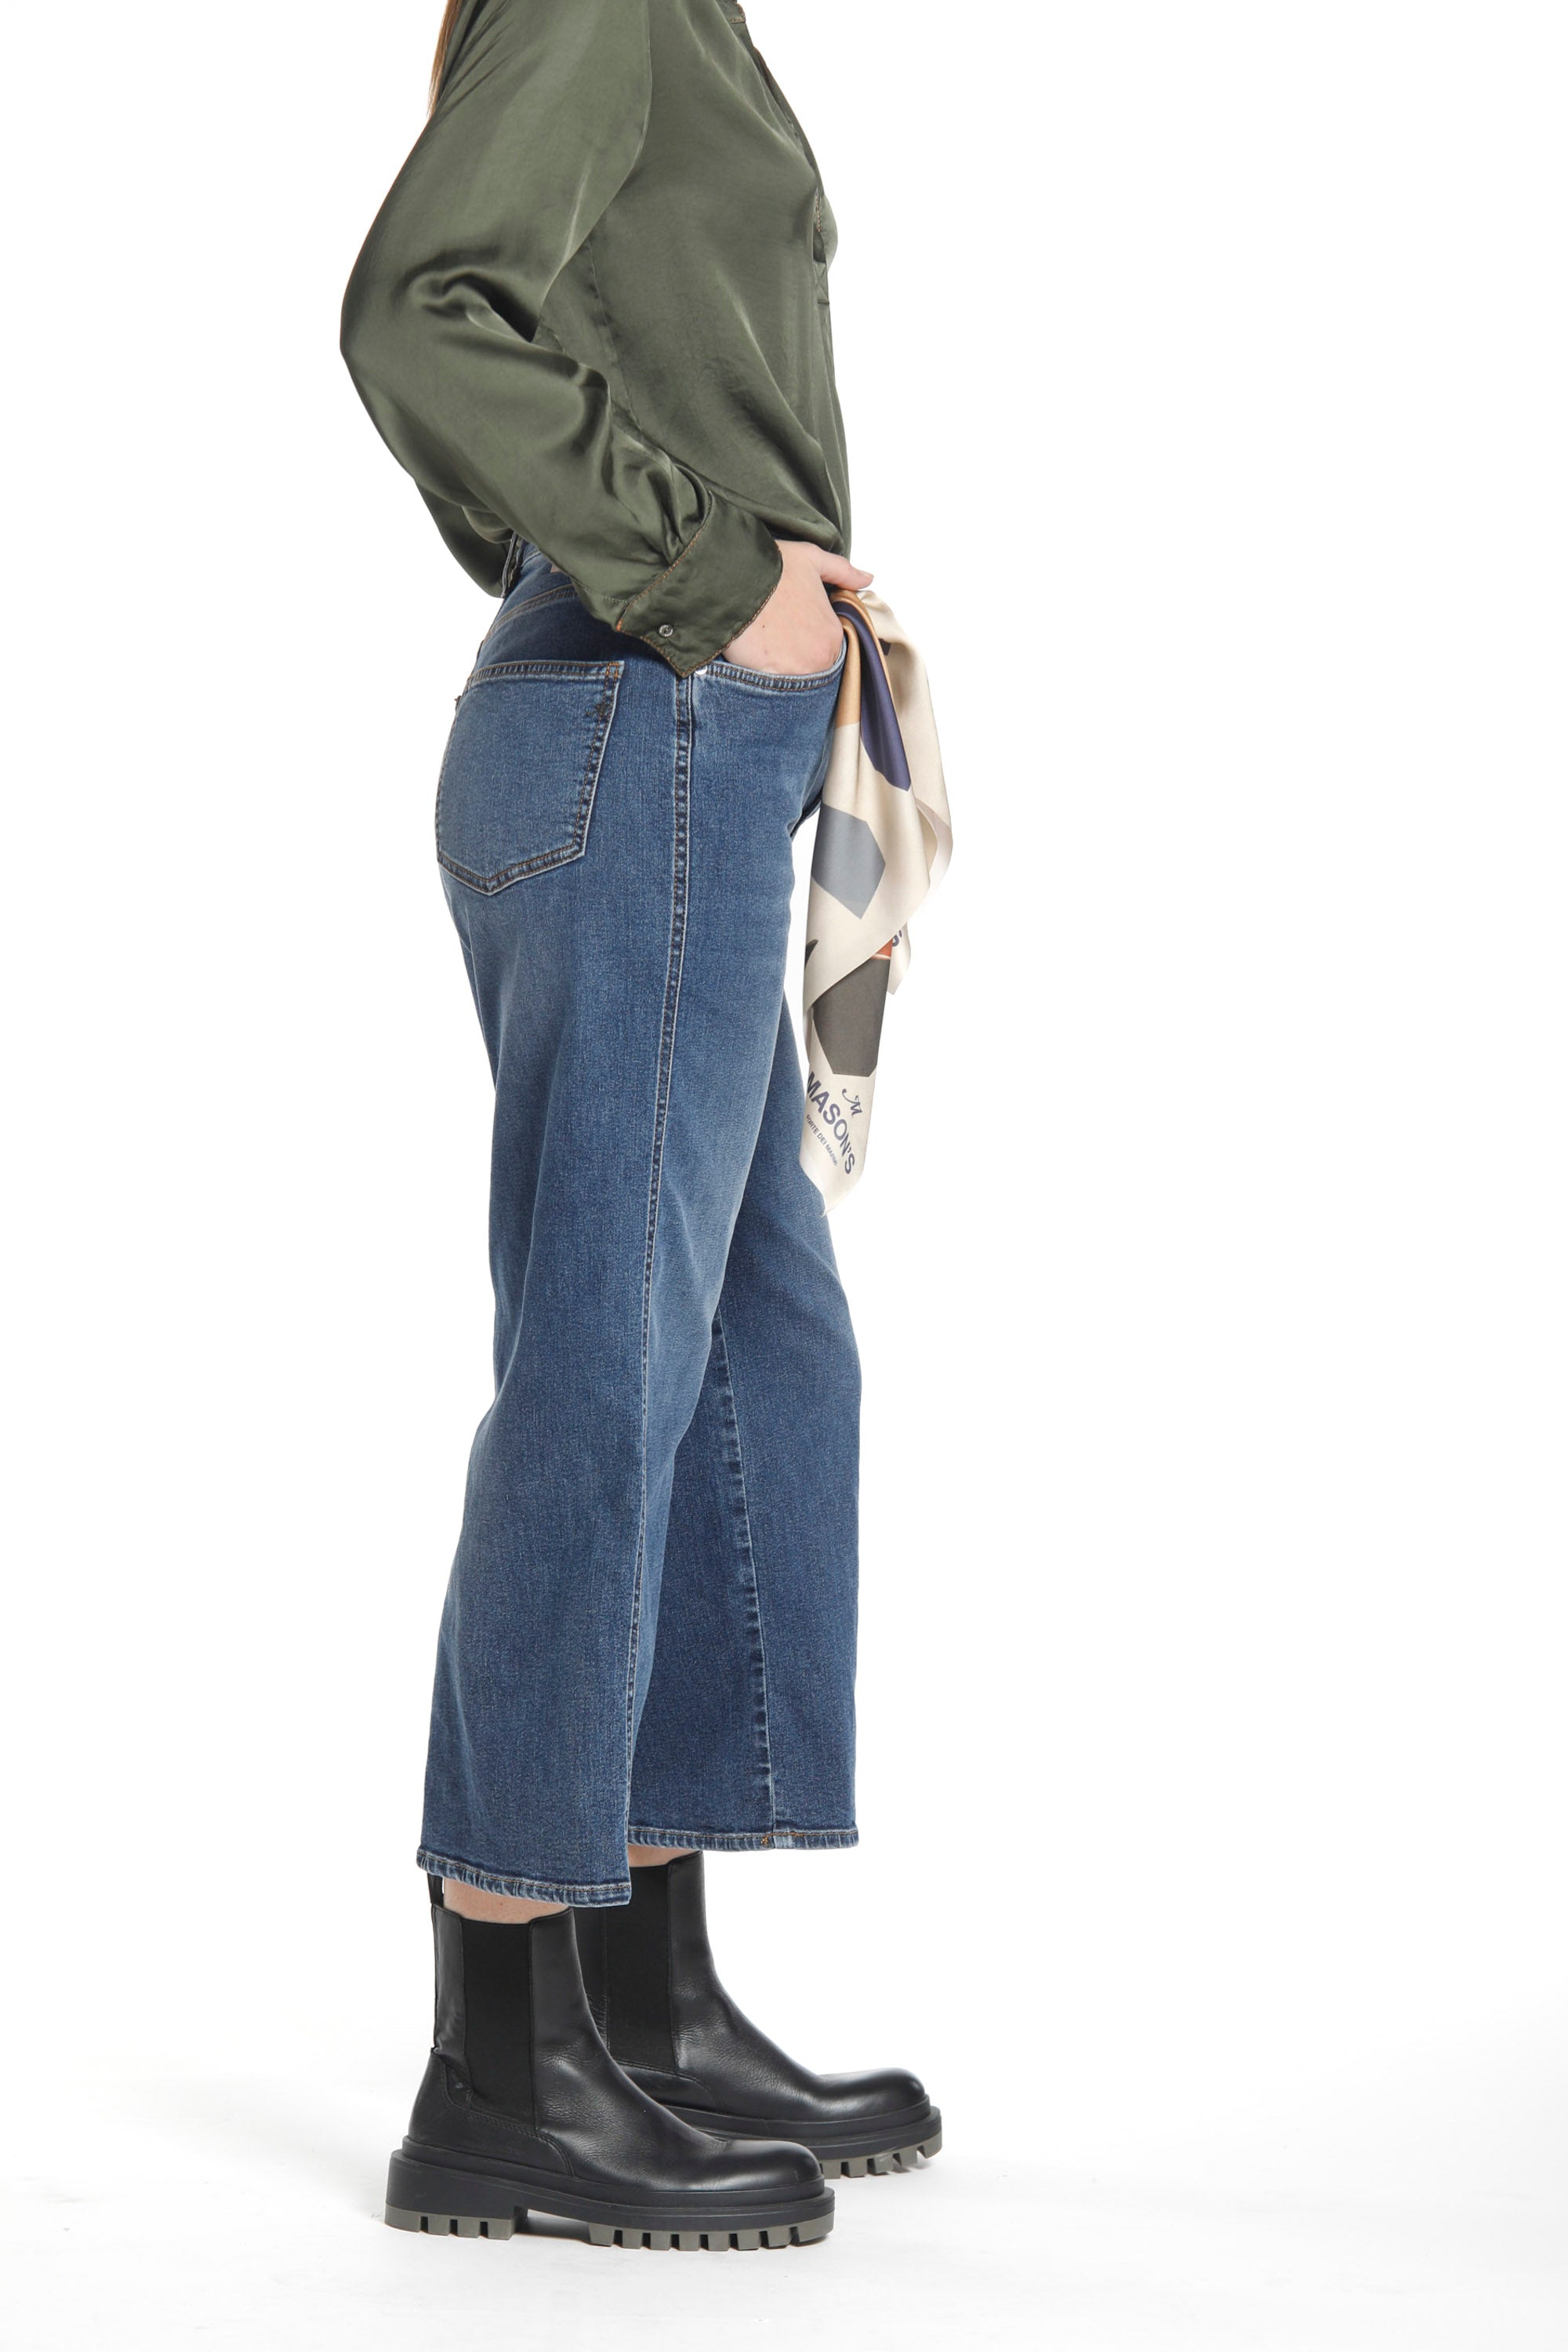 Image 4 de pantalon femme 5 poches en denim stretch couleur bleu marine modèle Samantha de Mason's